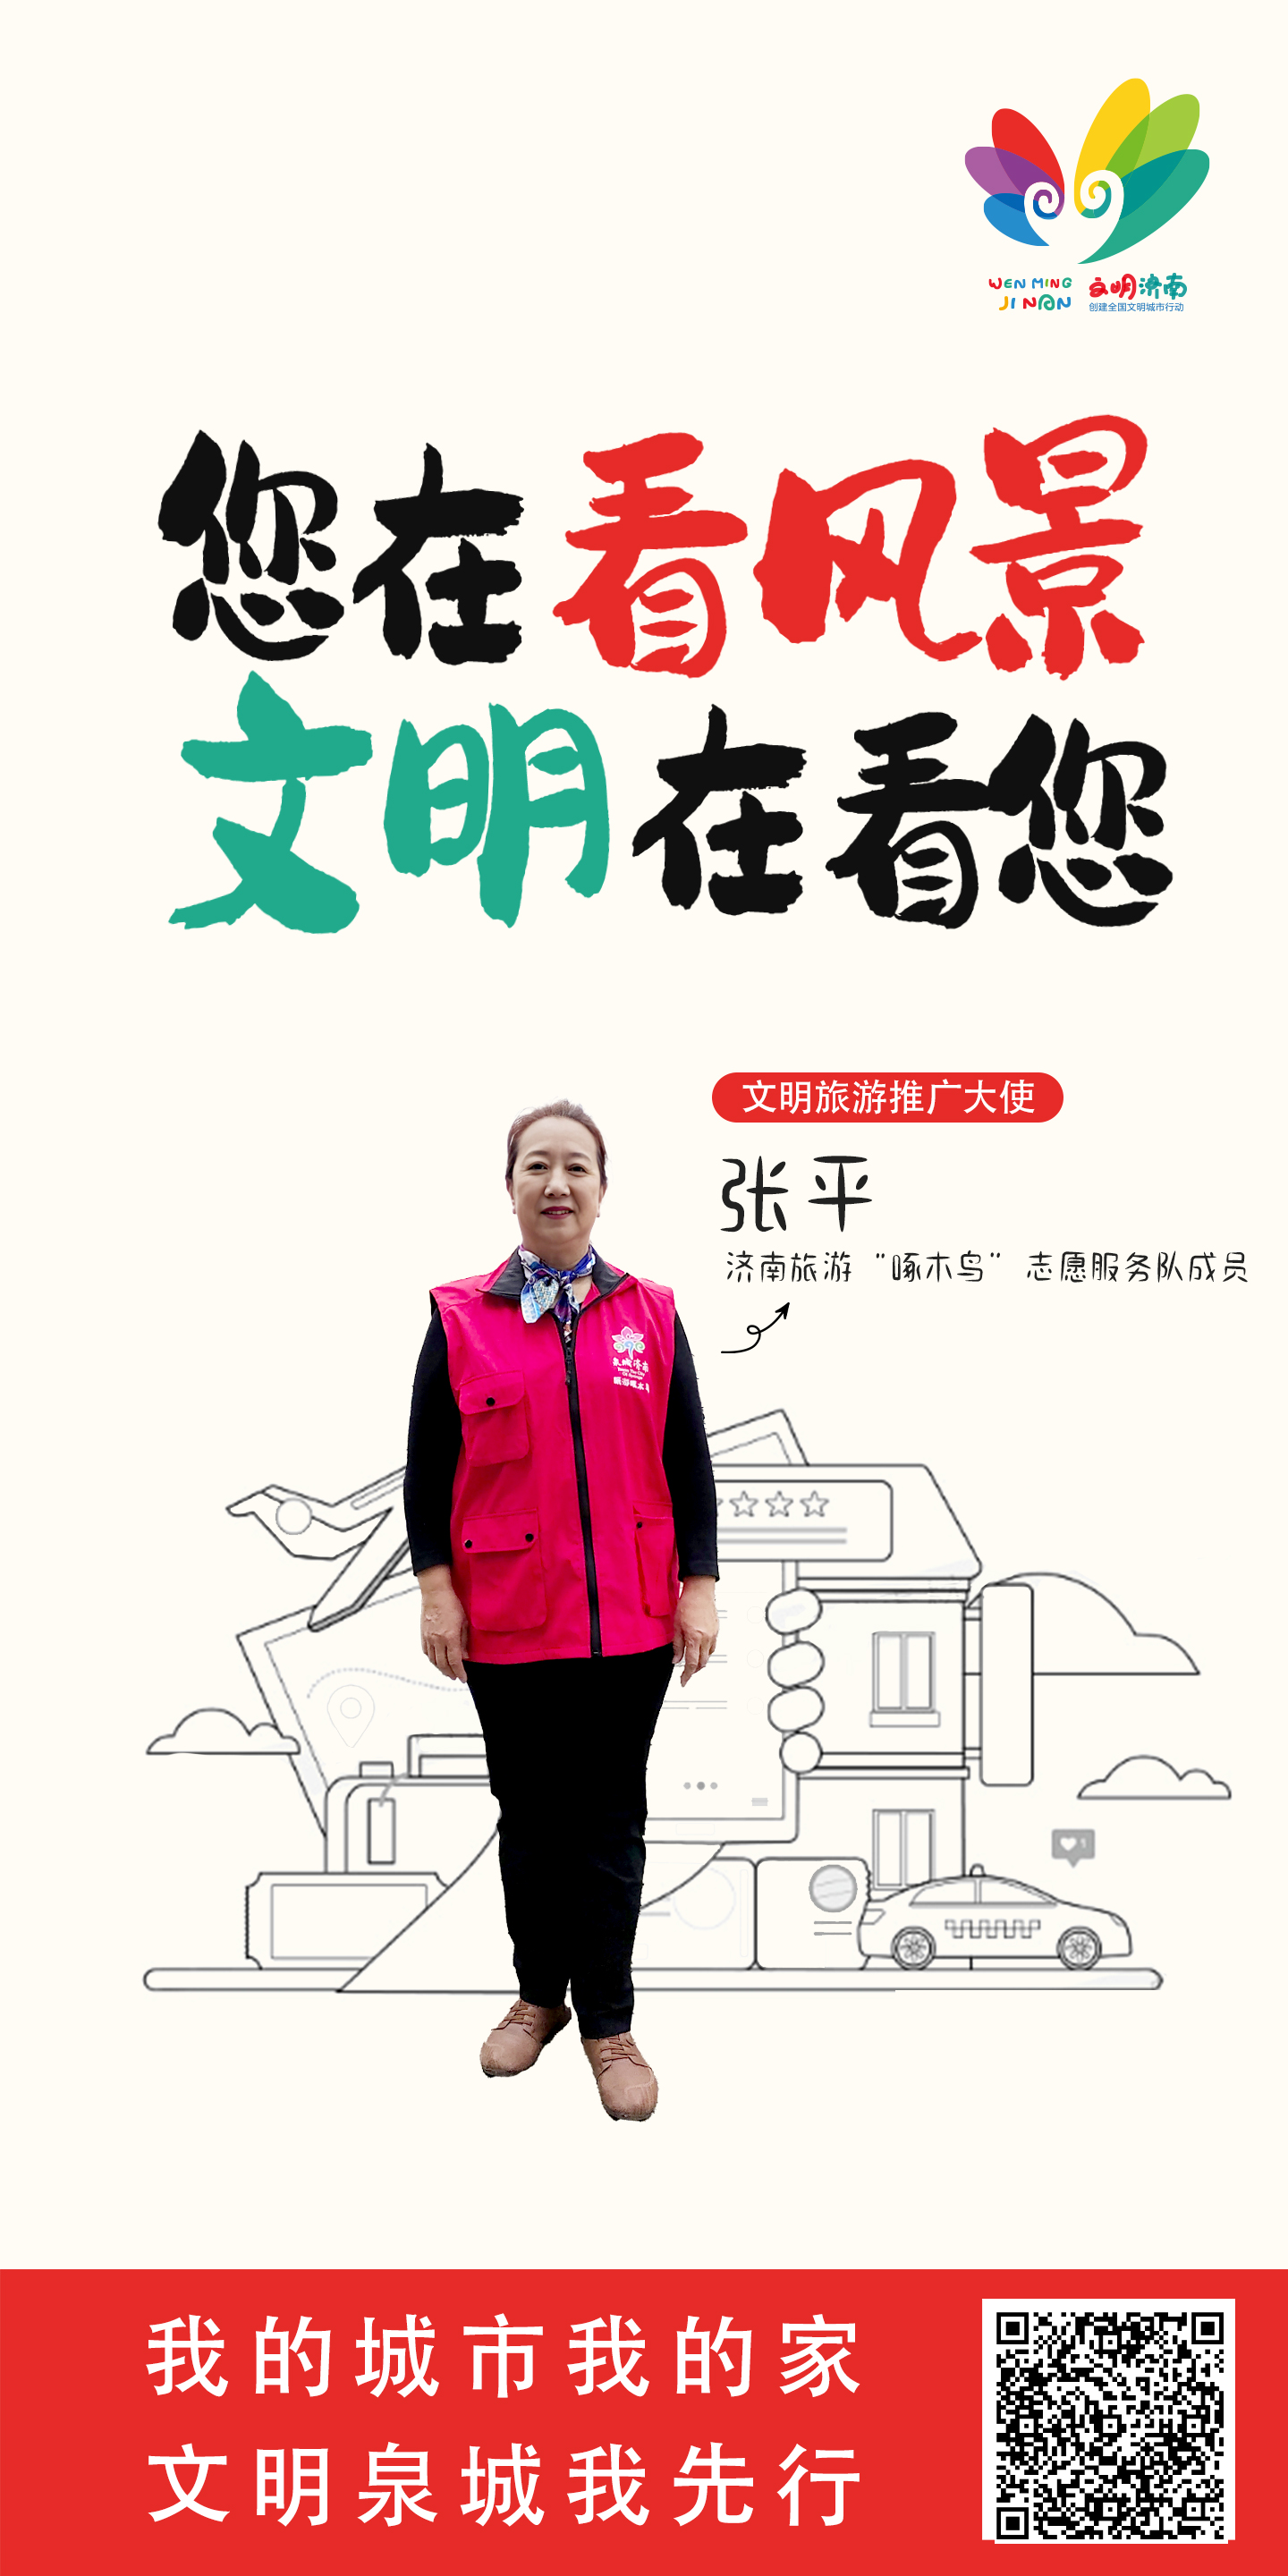 张平 “文明旅游”行动推广大使宣传公益广告